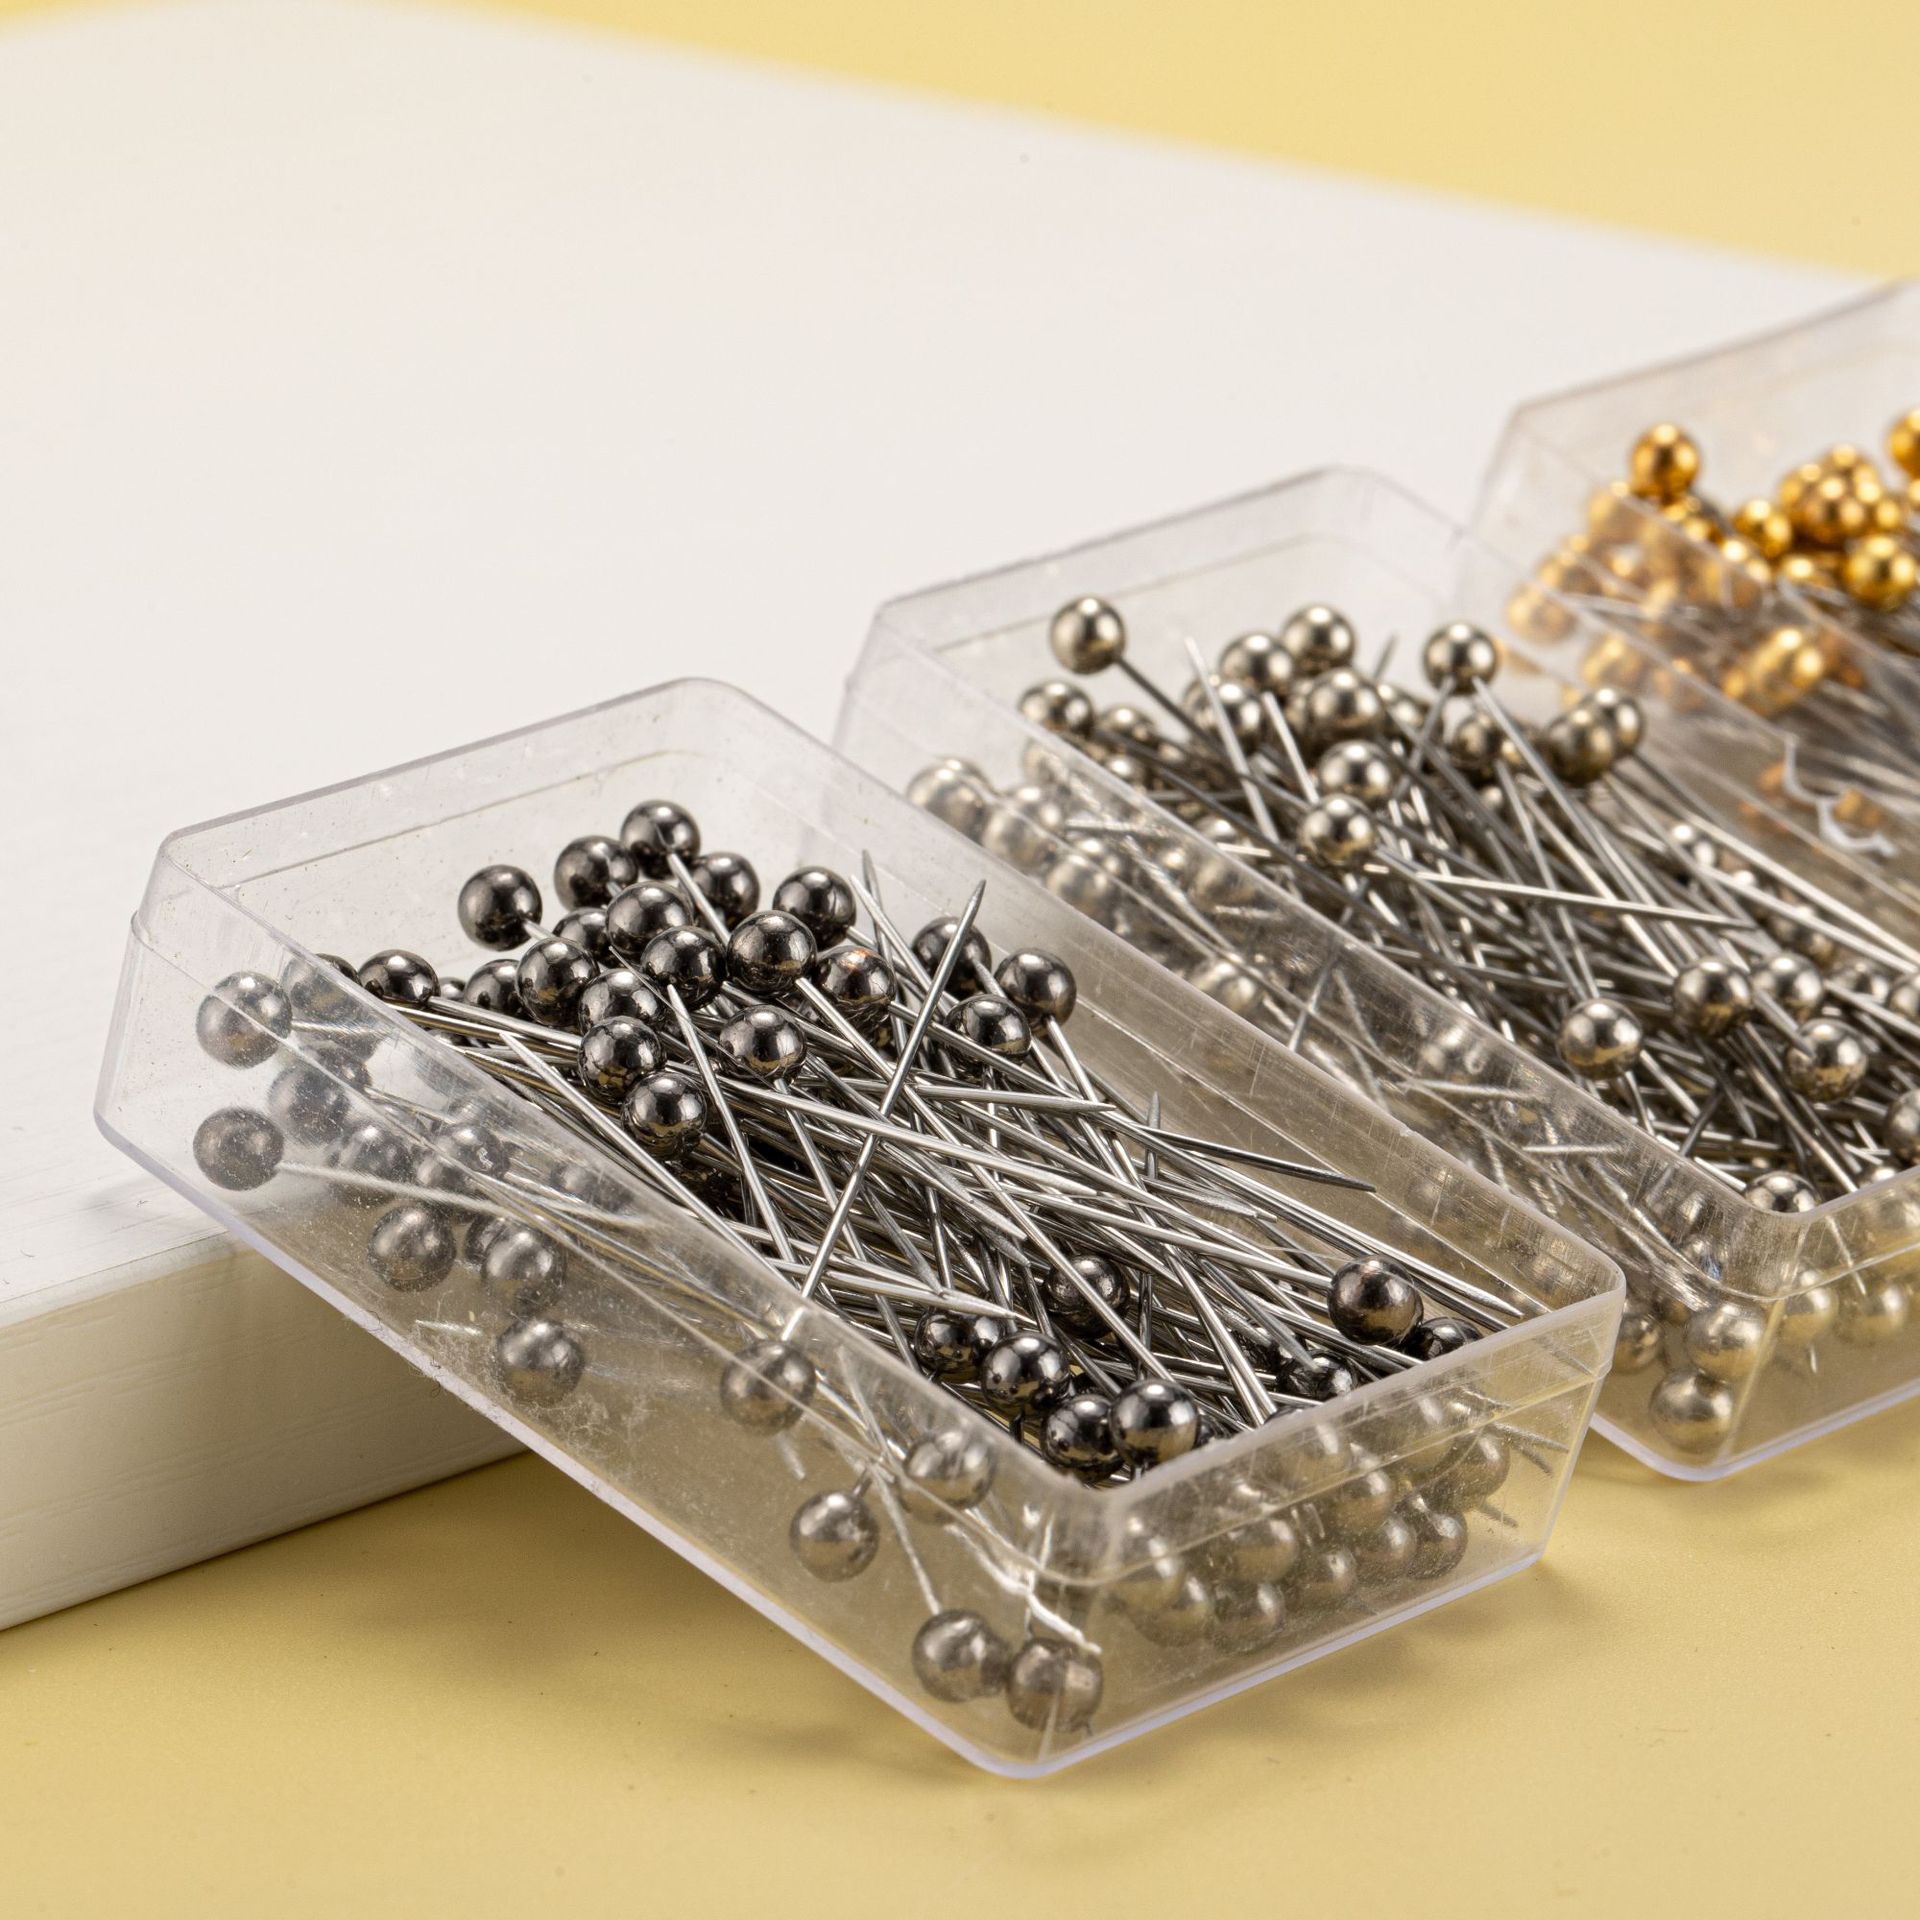 厂家批发 100枚盒装大头针定位针金属色珠光针服装定位编织固定针花艺针详情图3